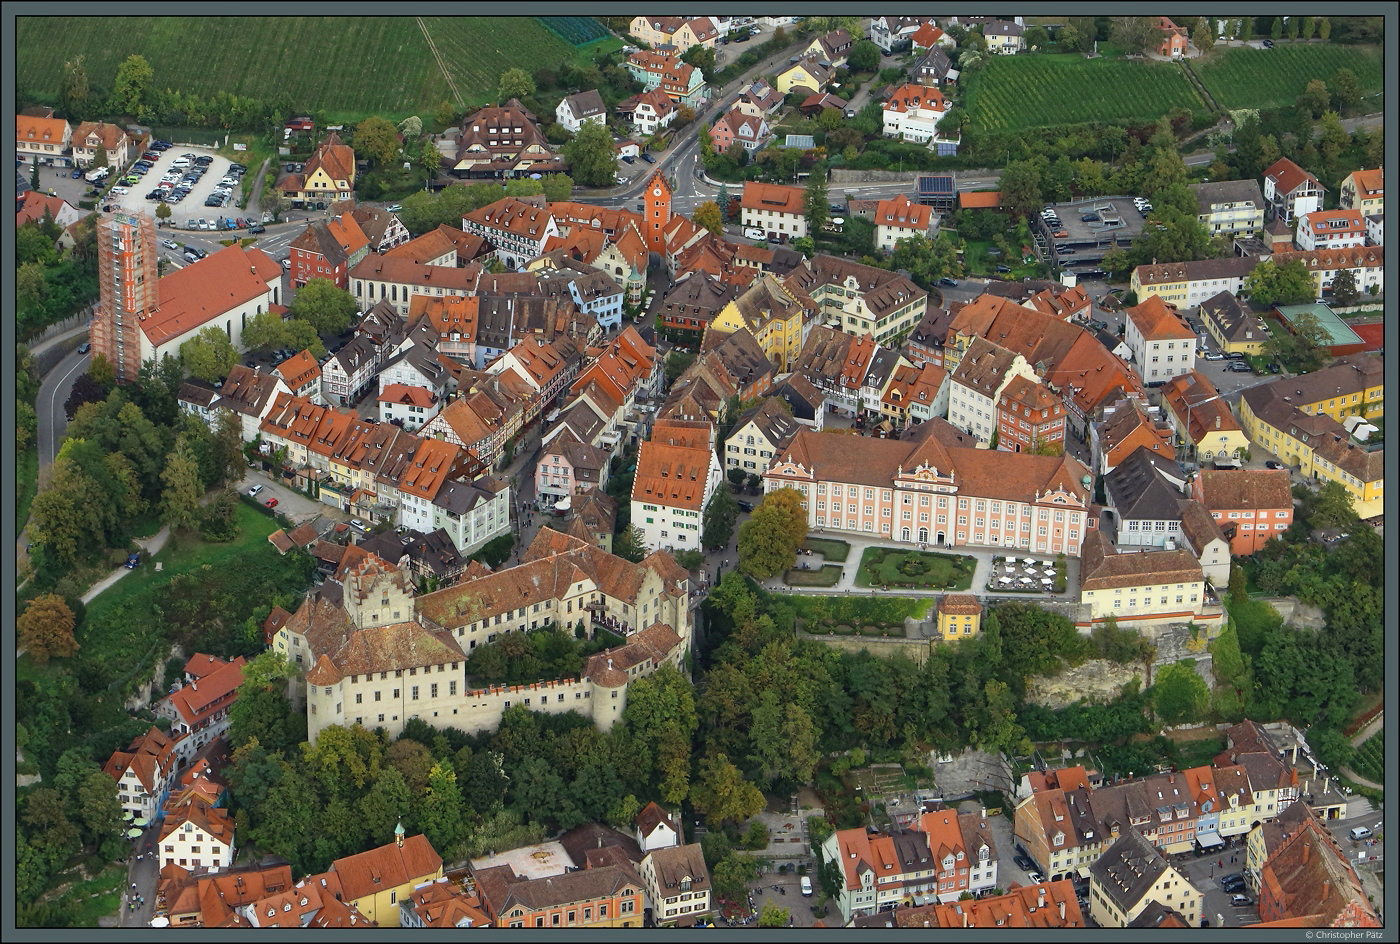 Die Burg Meersburg entstand bereits im 7. Jahrhundert und gilt als lteste bewohnte Burg Deutschlands. Daneben wurde im 18. Jahrhundert das neue Schloss errichtet. Die Stadt ist aufgrund seiner idyllischen Lage am Bodensee und wegen der zahlreichen Winzerstuben und Restaurants ein beliebtes Touristenziel. (Meersburg, 05.10.2023)